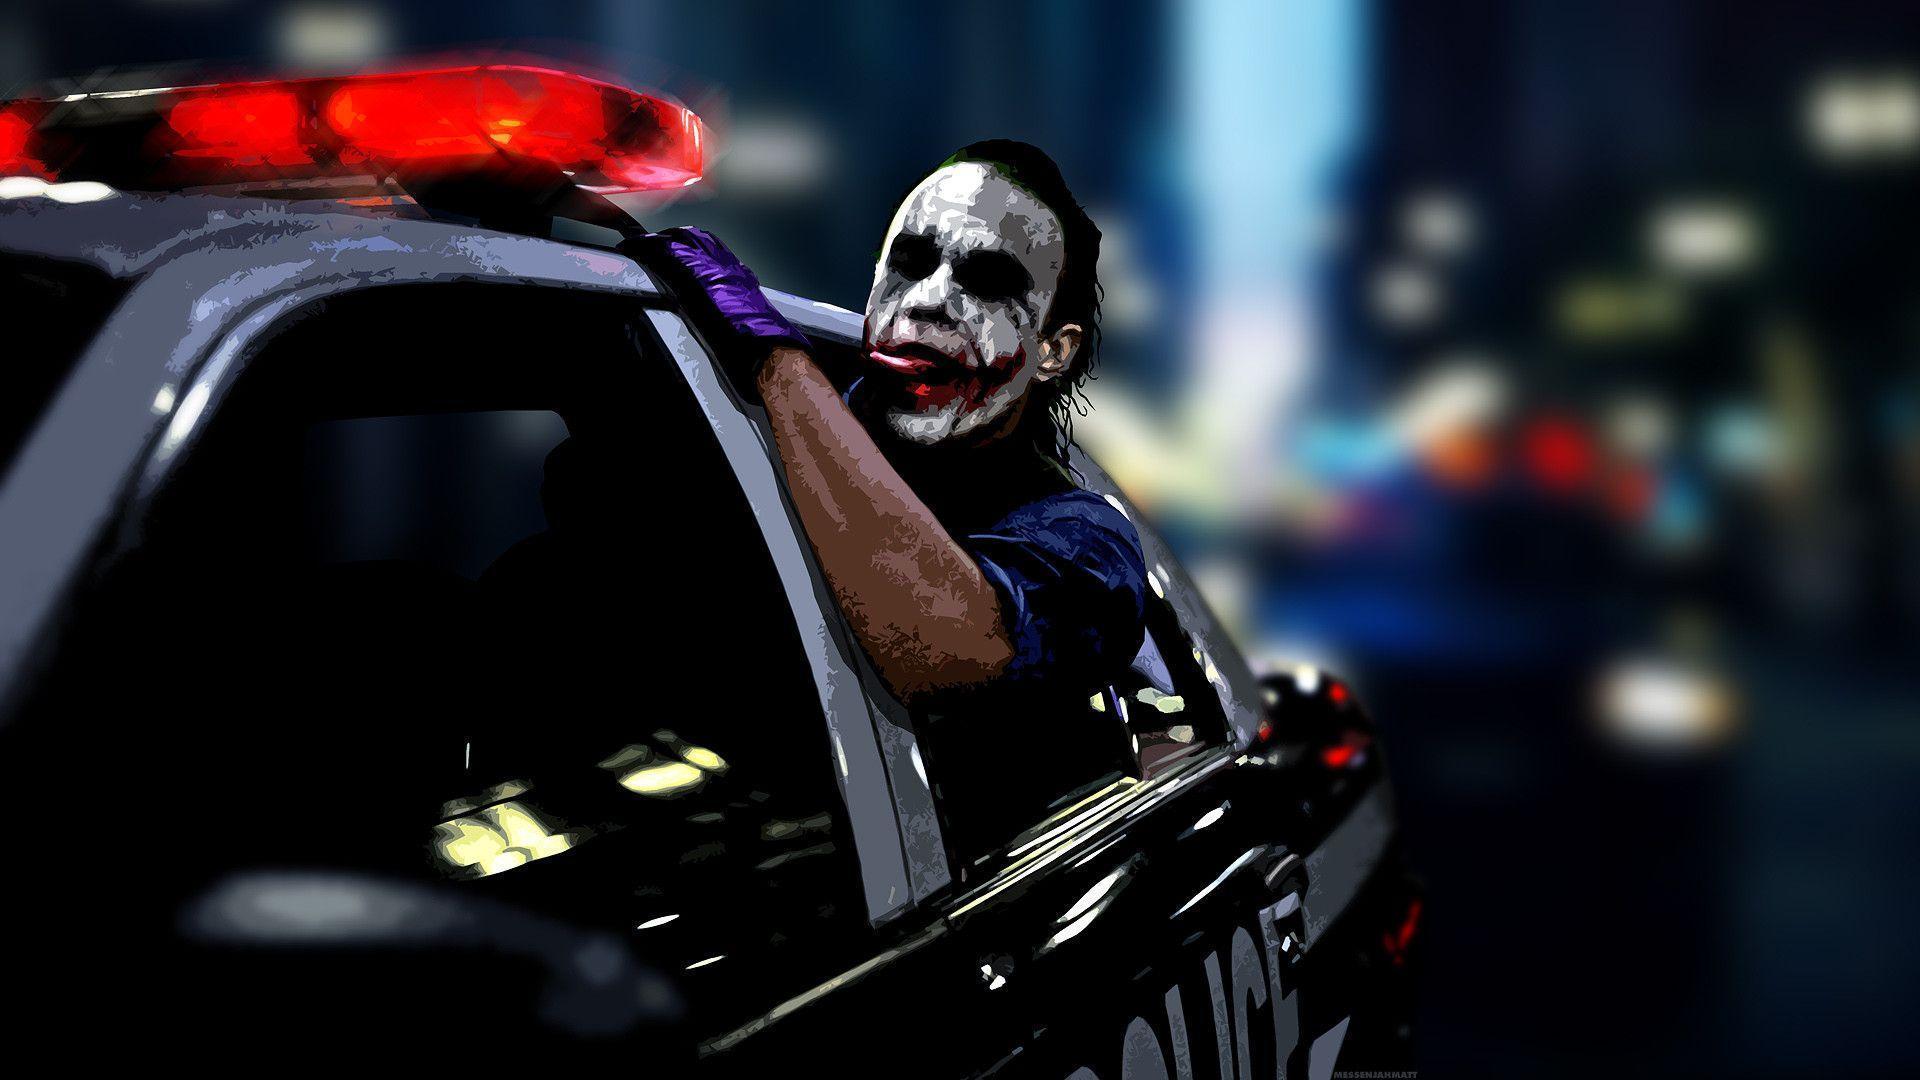 Cop Car Movie Wallpaper